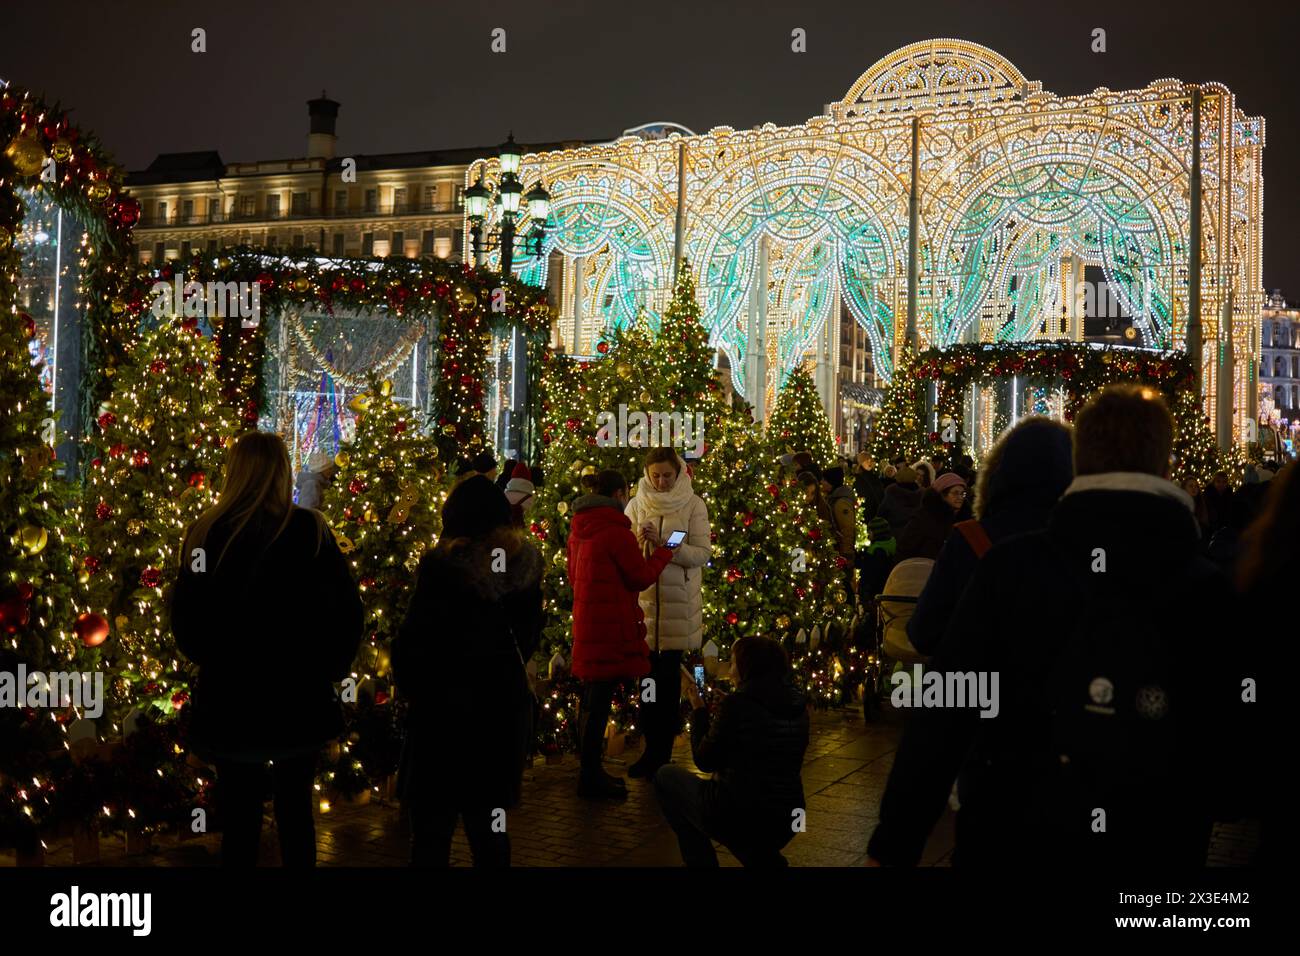 MOSCOU, RUSSIE - 3 janvier 2018 : les gens marchent parmi les arbres de noël décorés et les objets d'art illuminés sur la place Manezhnaya pendant Noël et le nouvel an Banque D'Images